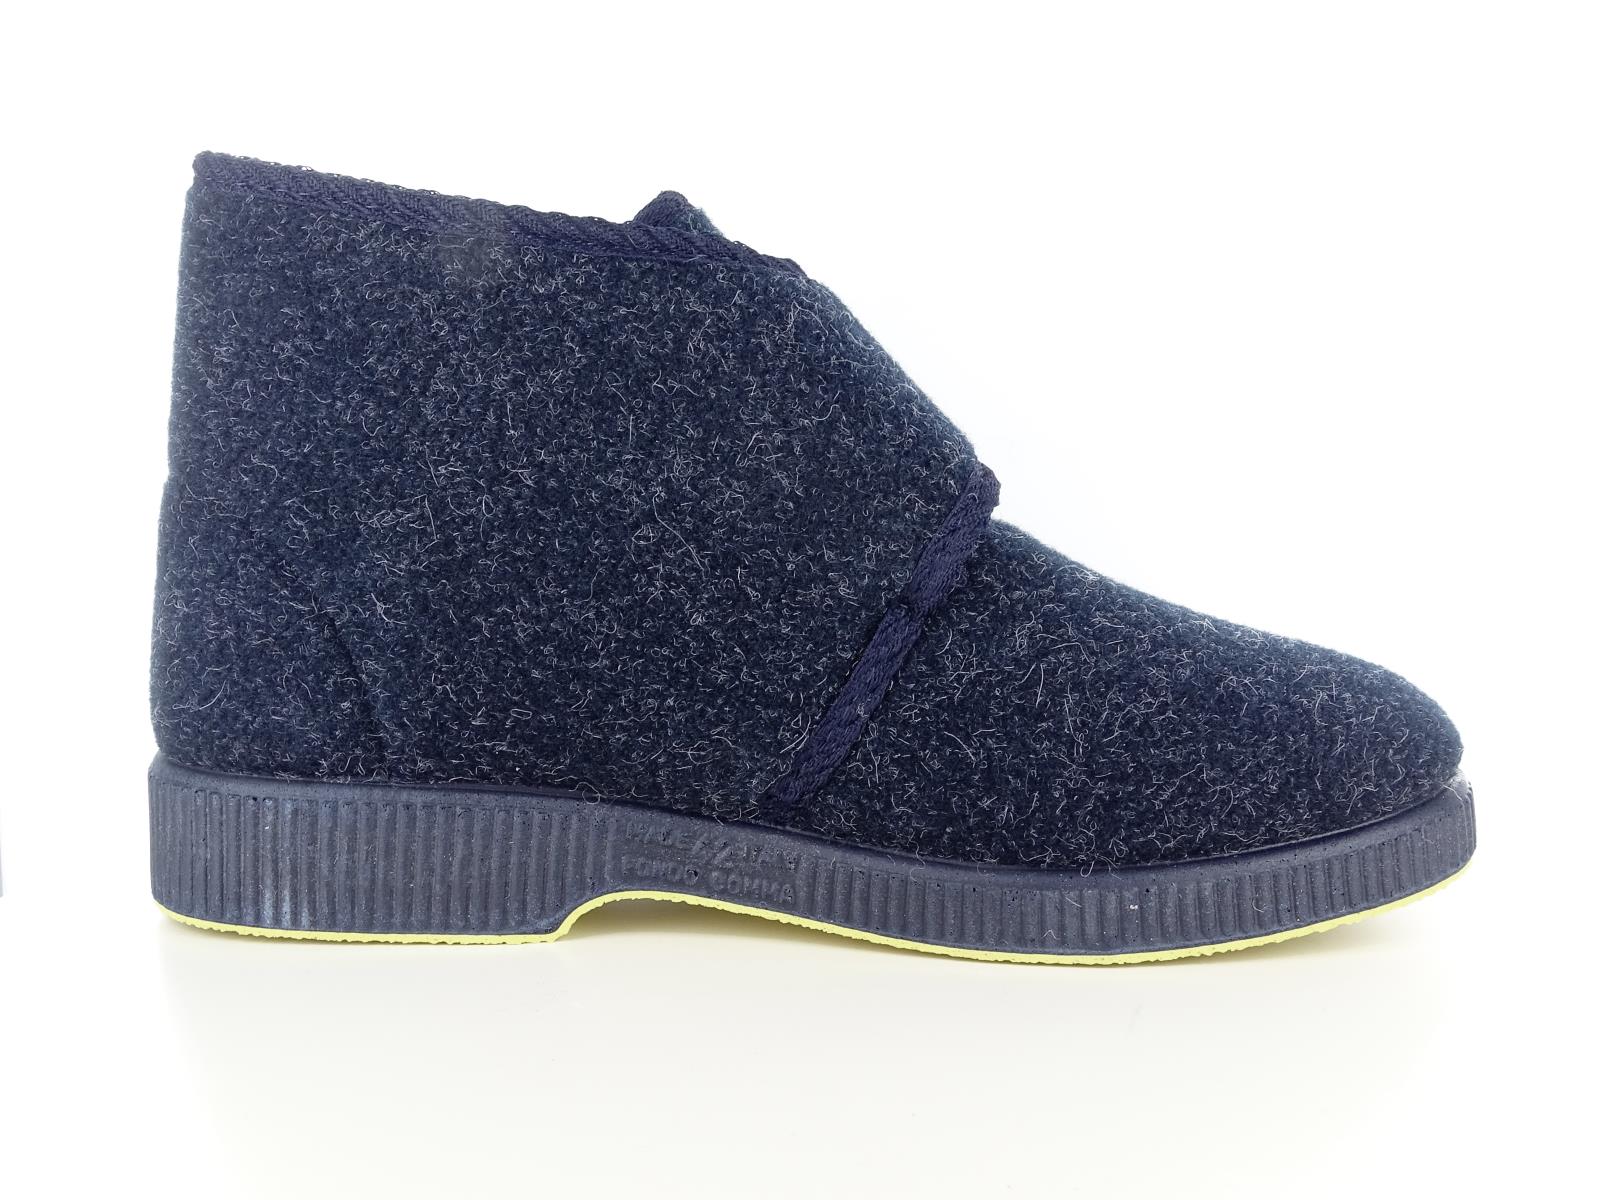 Emanuela 564 Pantofole invernali da uomo scarpe comode di colore blu di lana con strappo